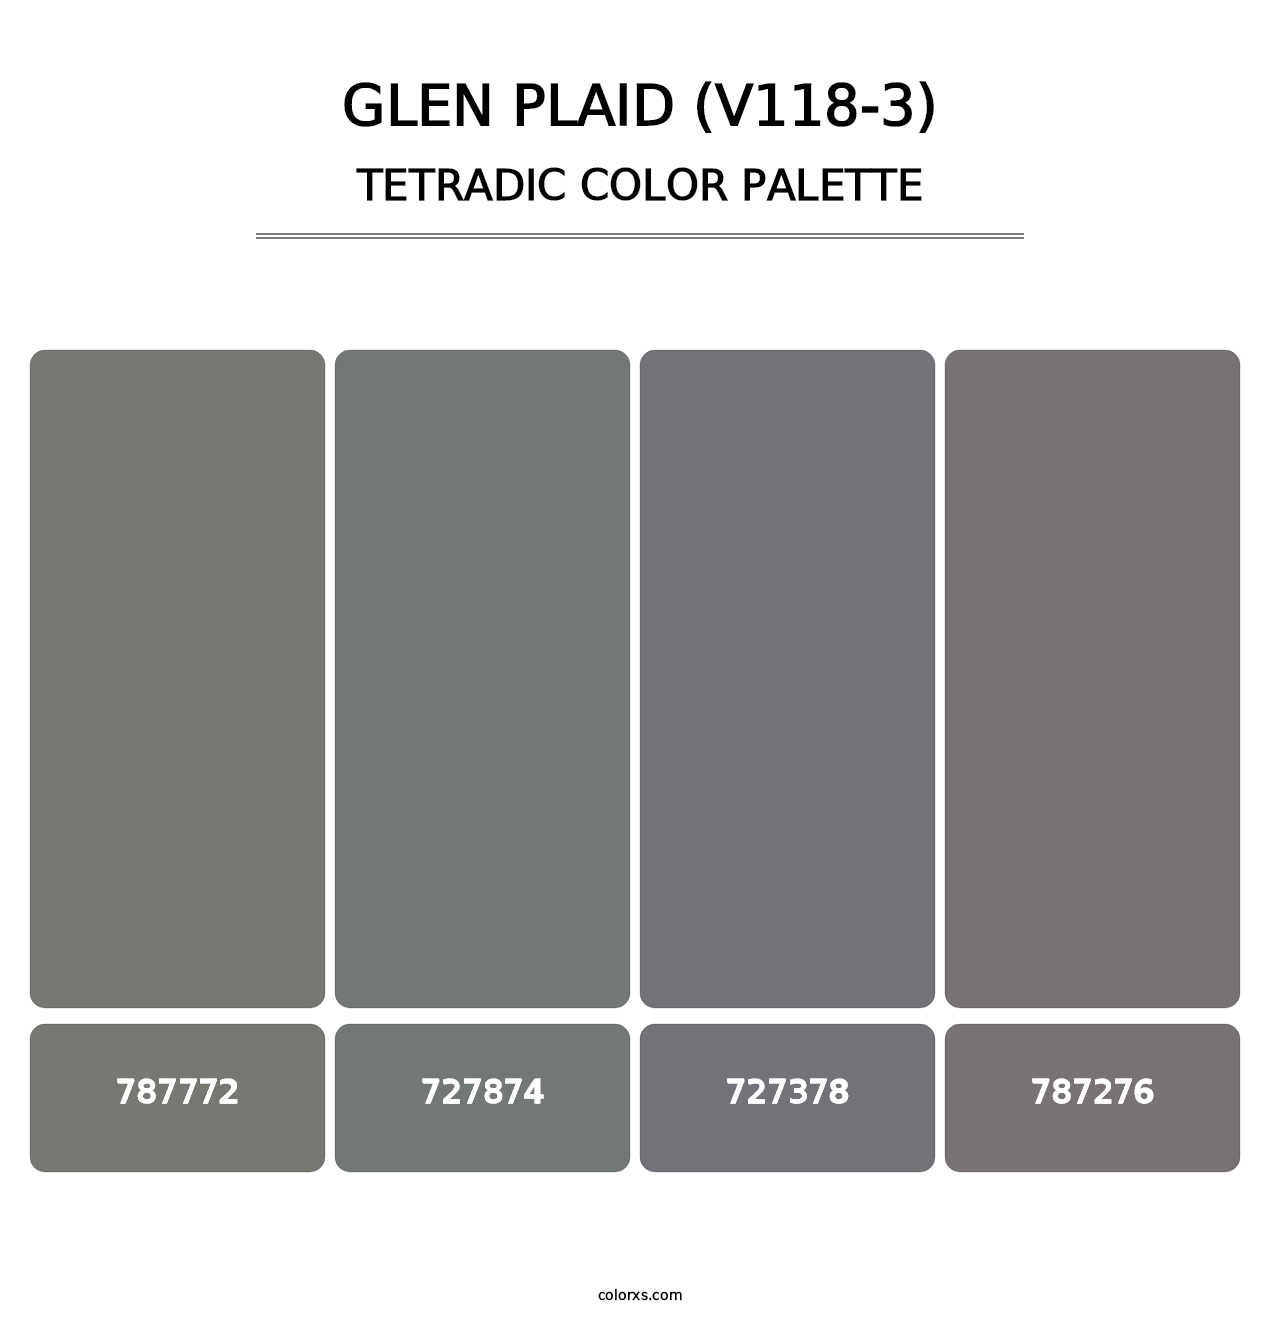 Glen Plaid (V118-3) - Tetradic Color Palette